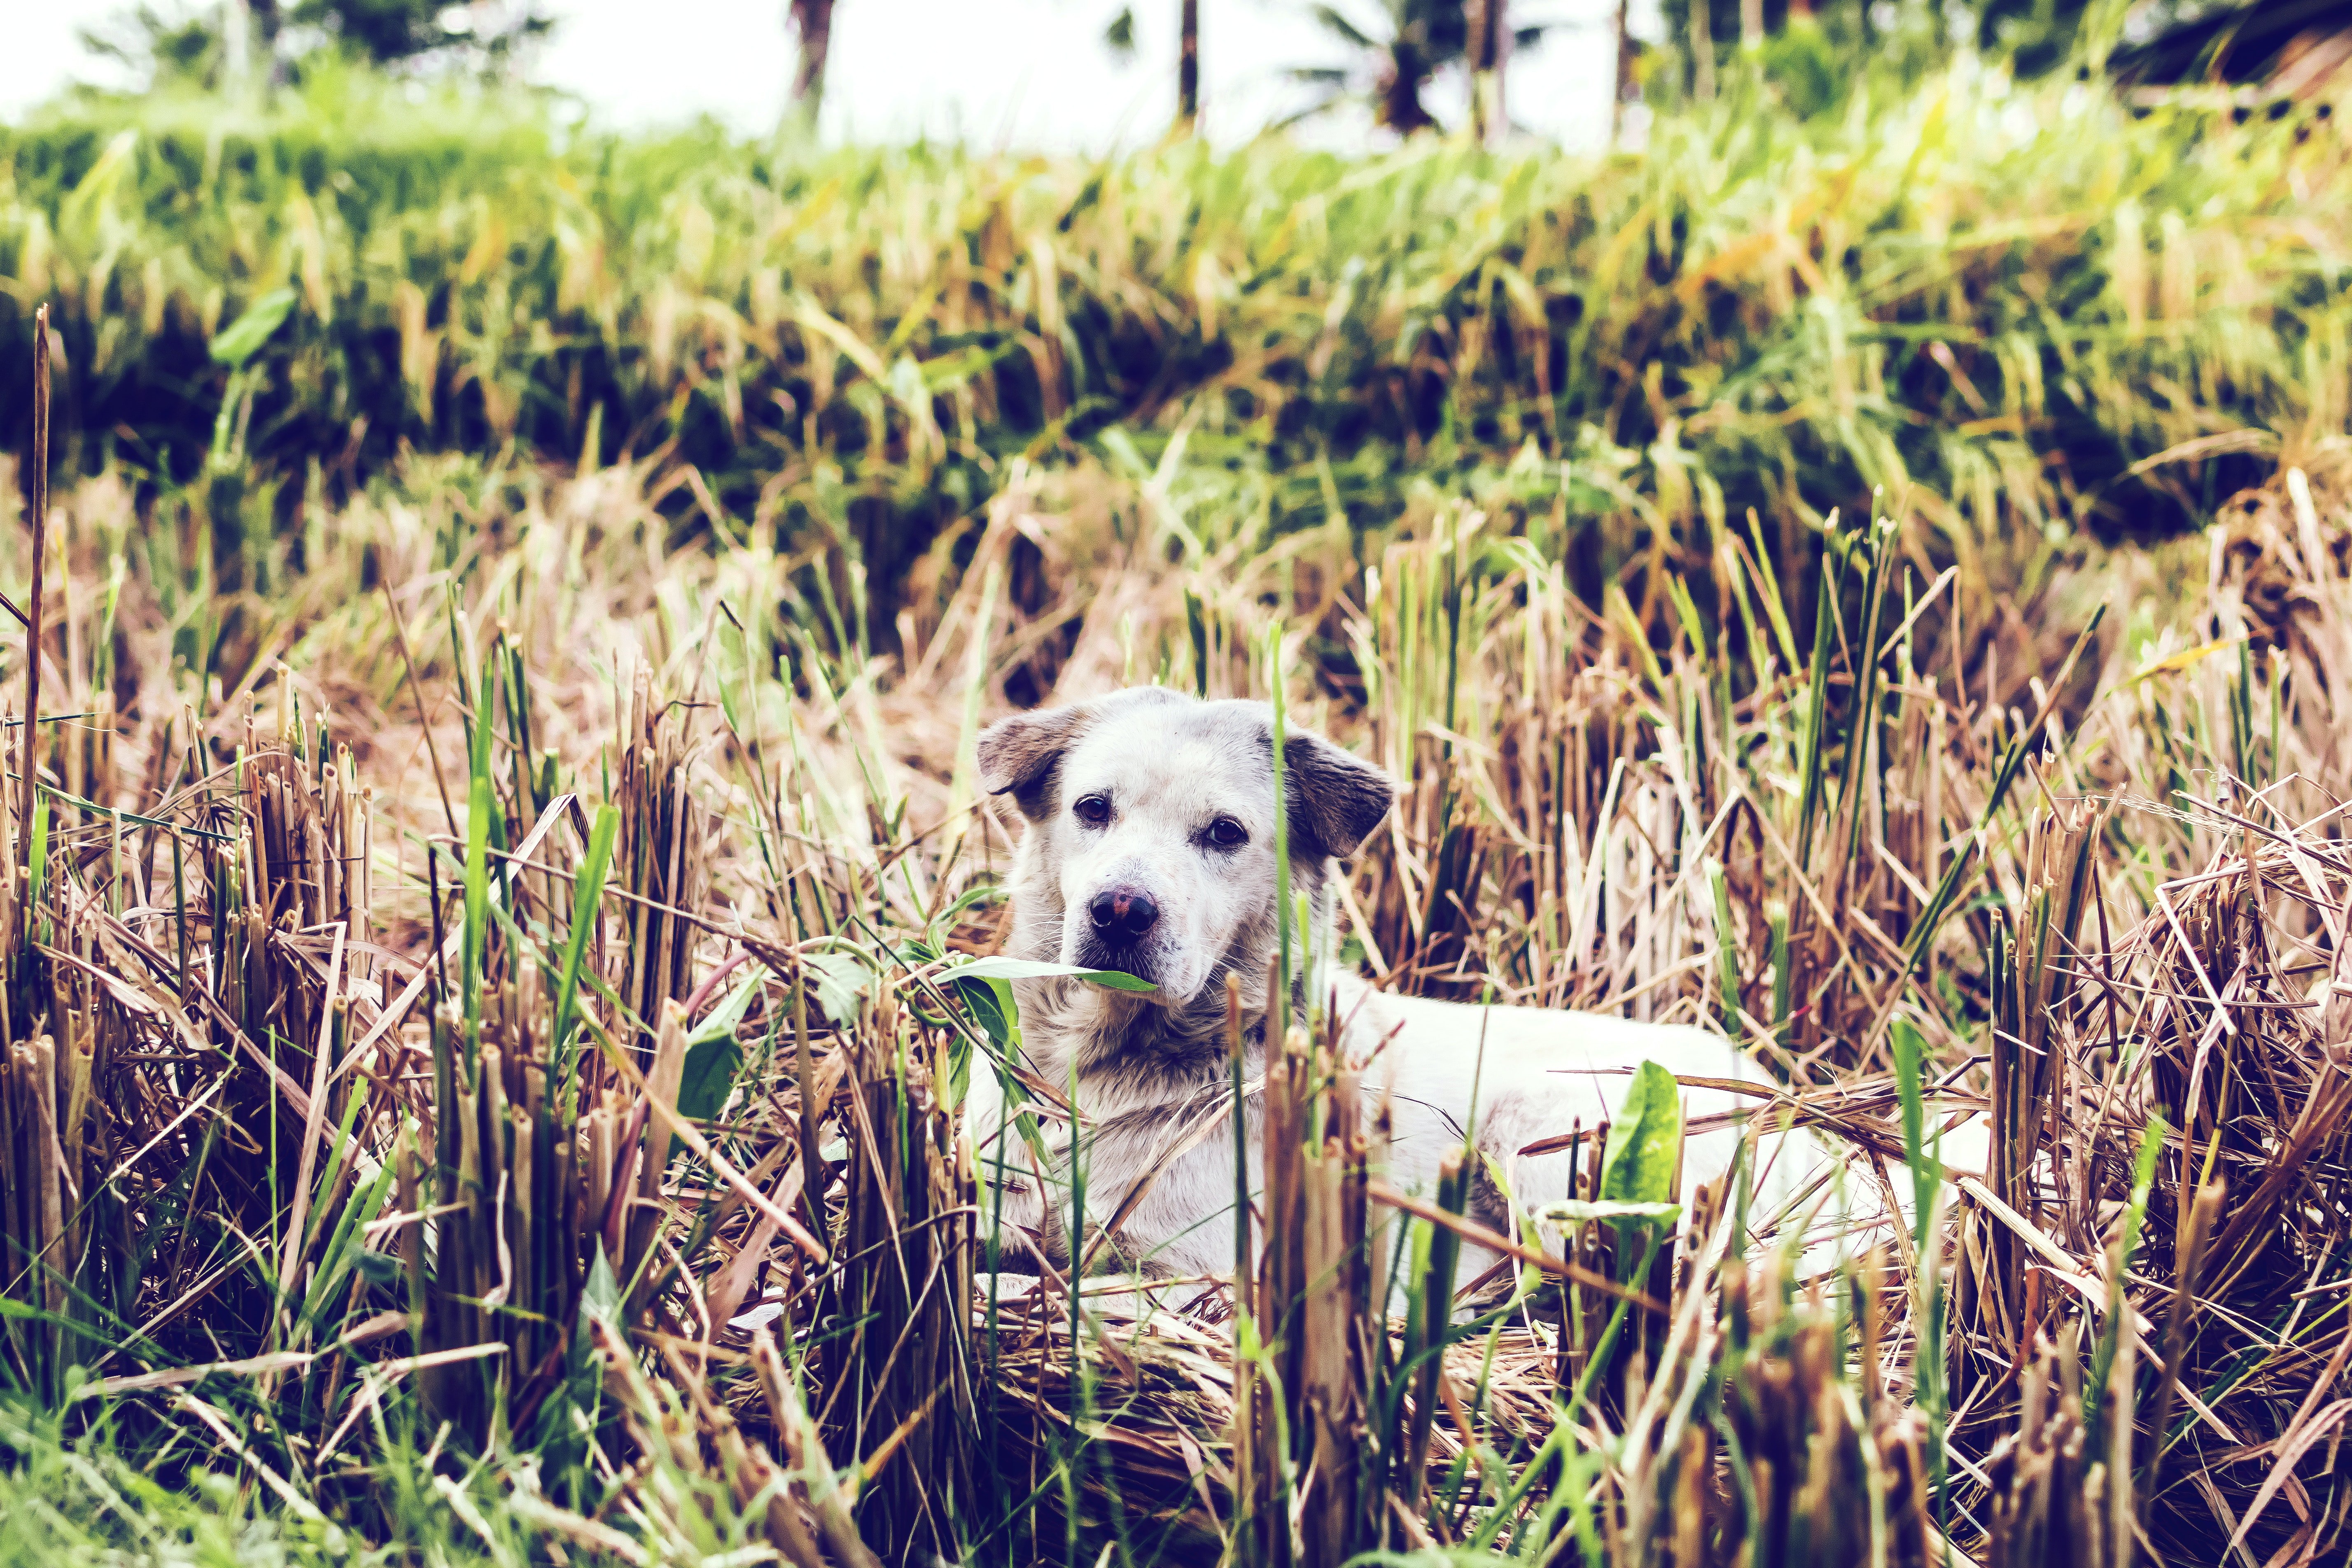 Un perro callejero recostado entre el pasto. | Foto: Pexels